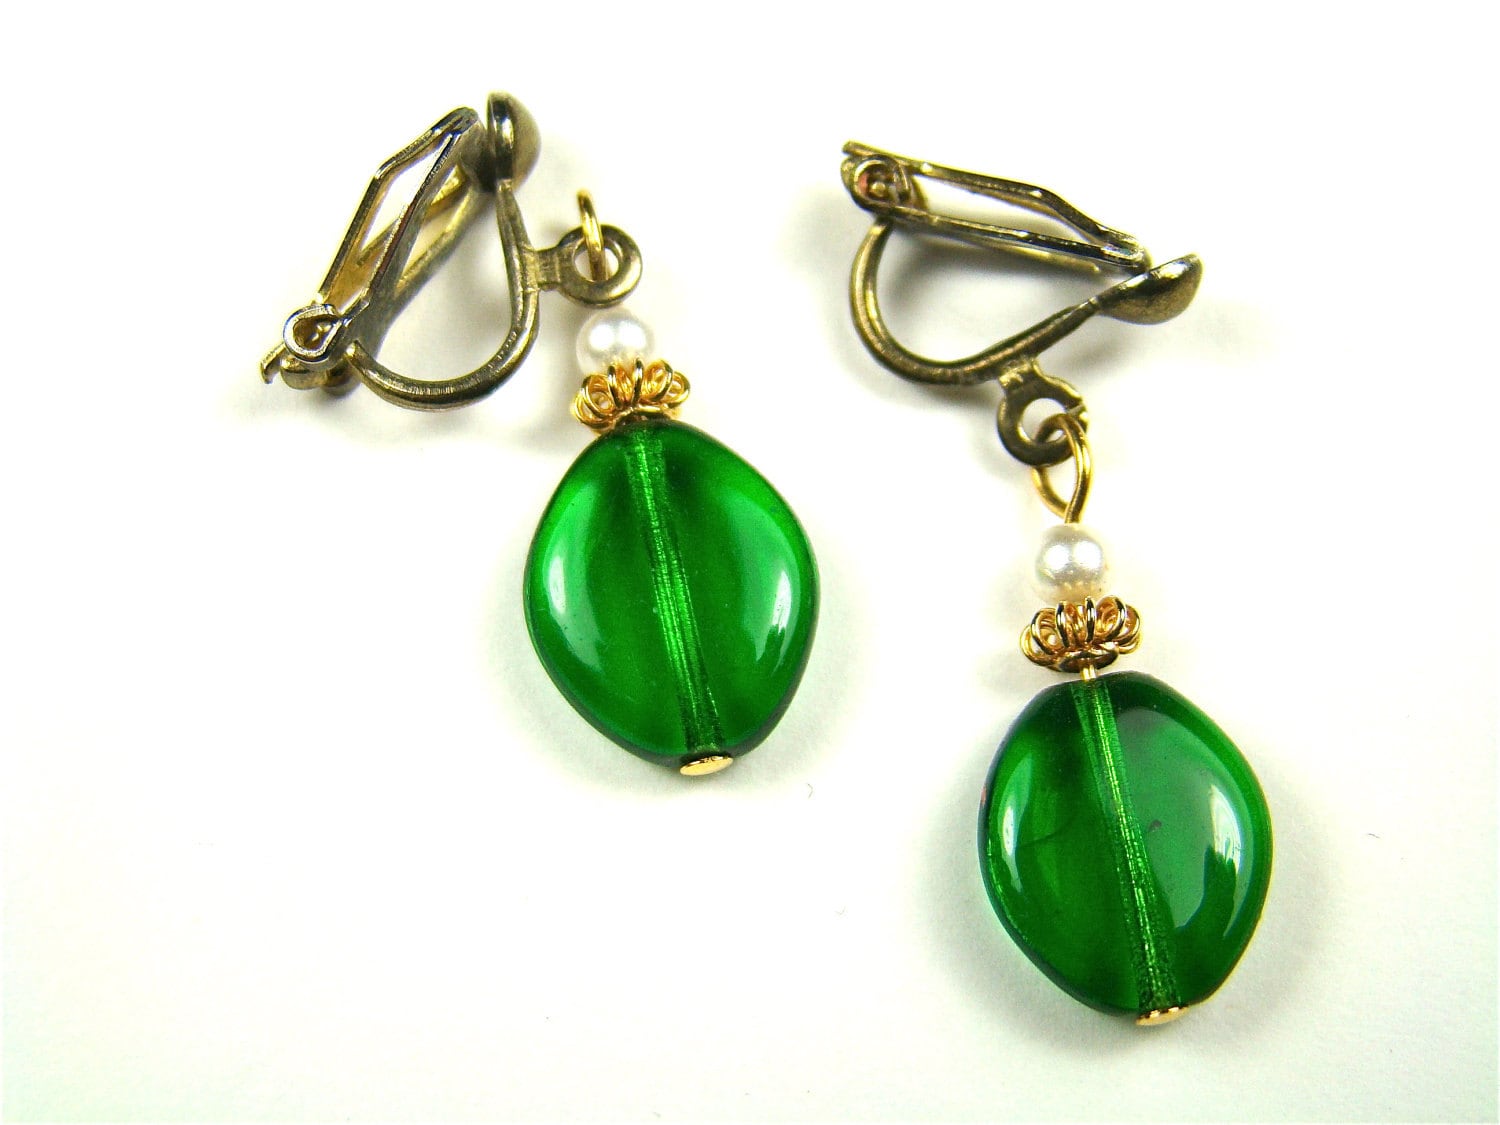 ceremony earrings green jade earrings vintage earrings elegant earrings silver and jade earrings Jade earrings